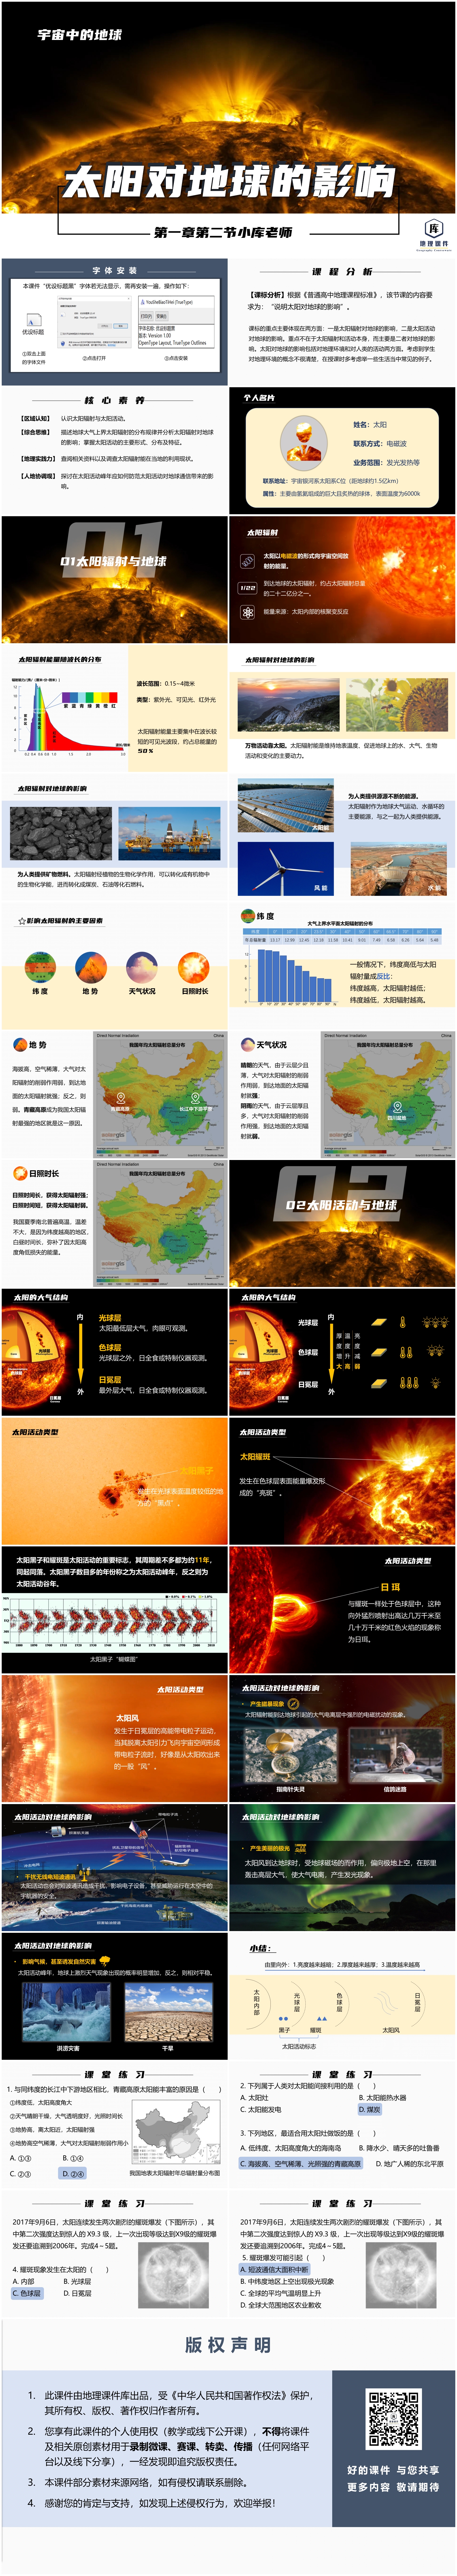 1.2 太阳对地球的影响©地理课件库.jpg